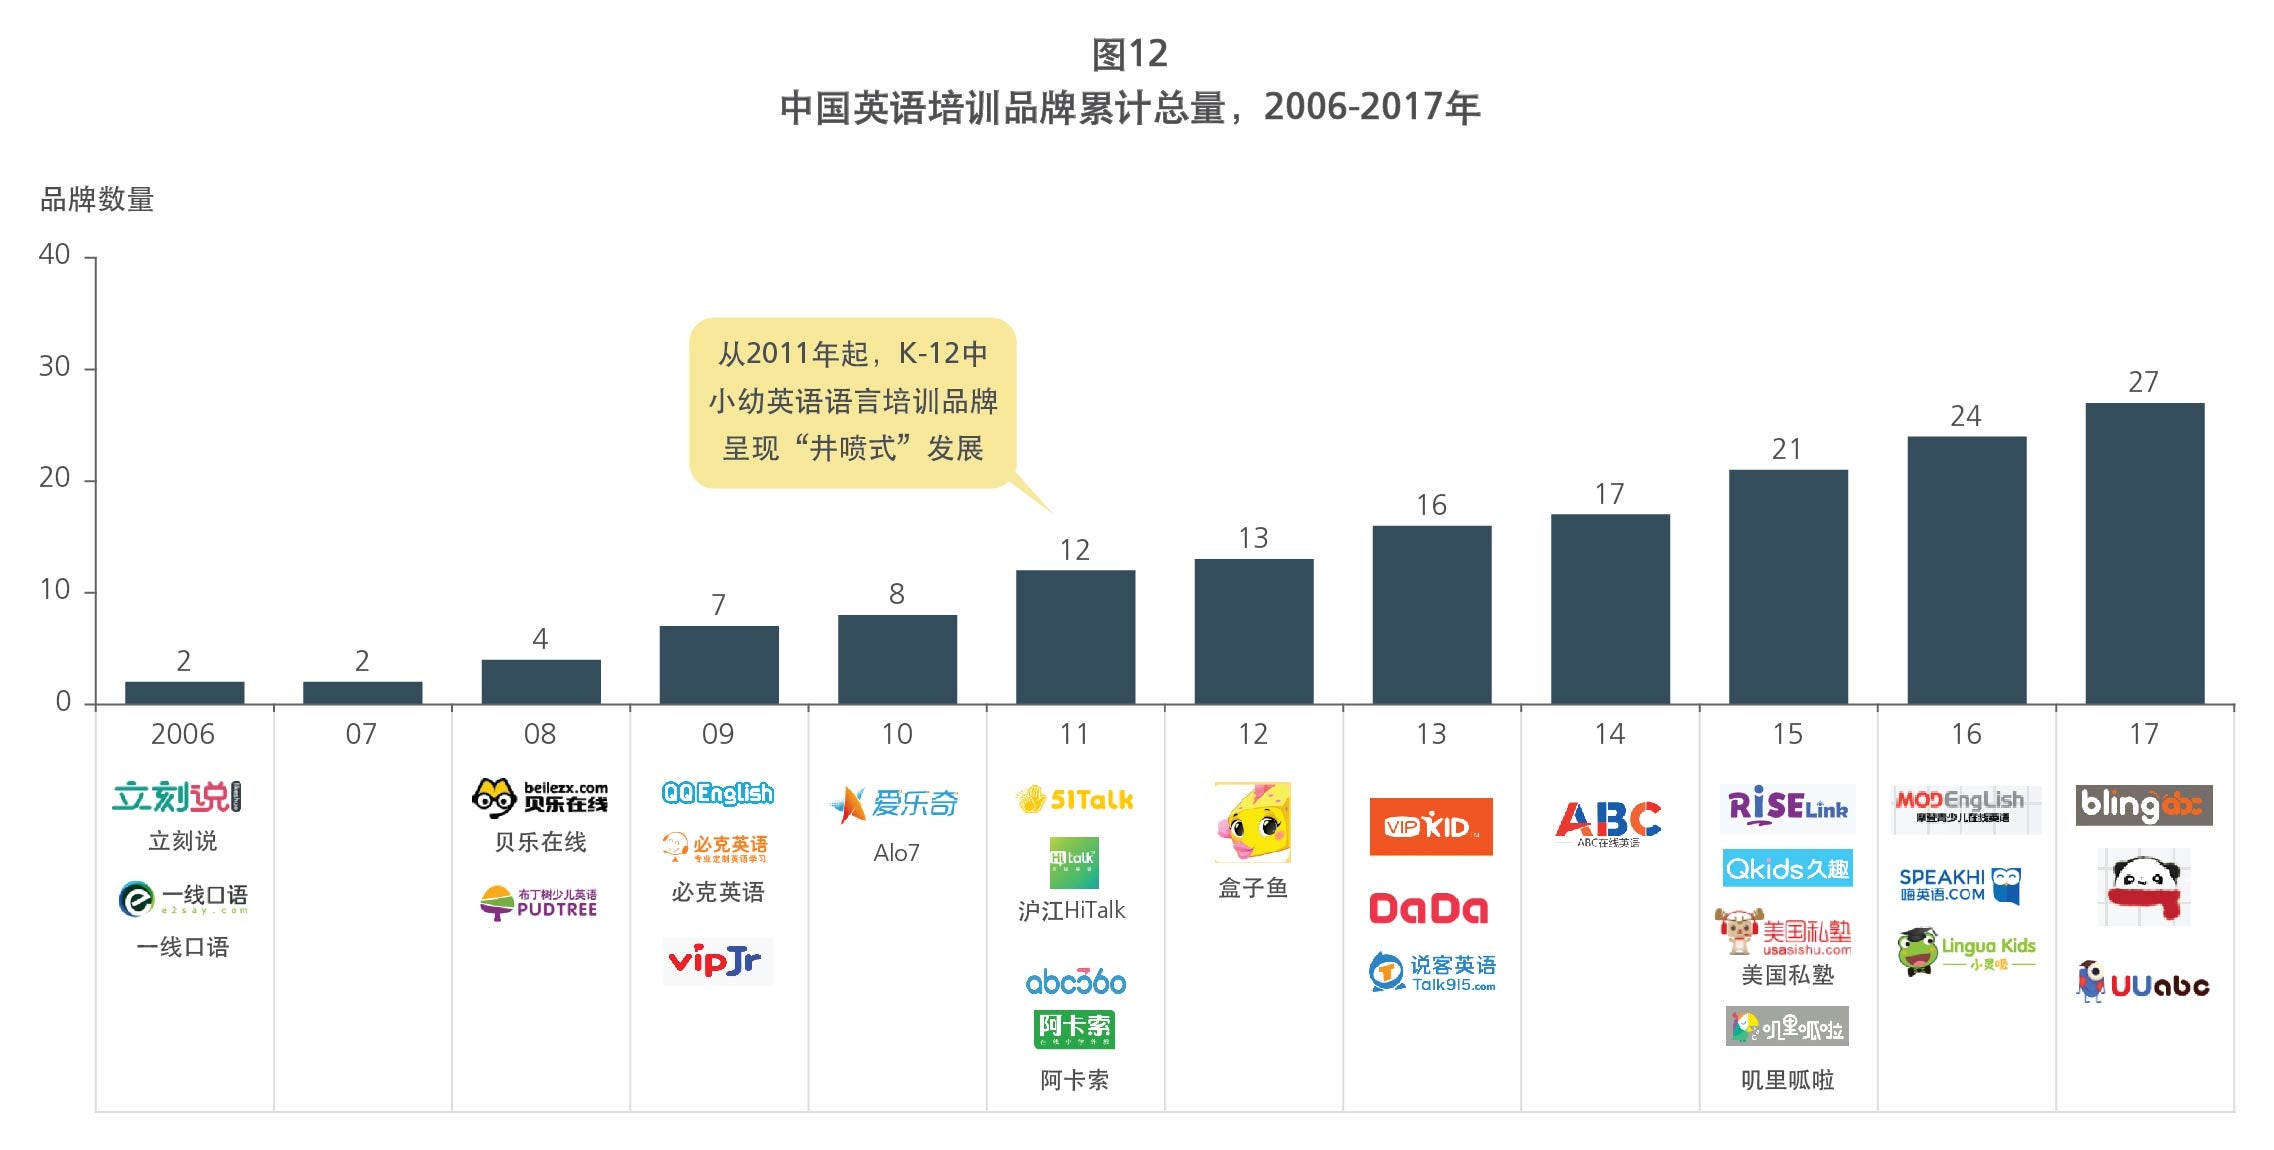 Cumulative ELT brands in China 2006-17